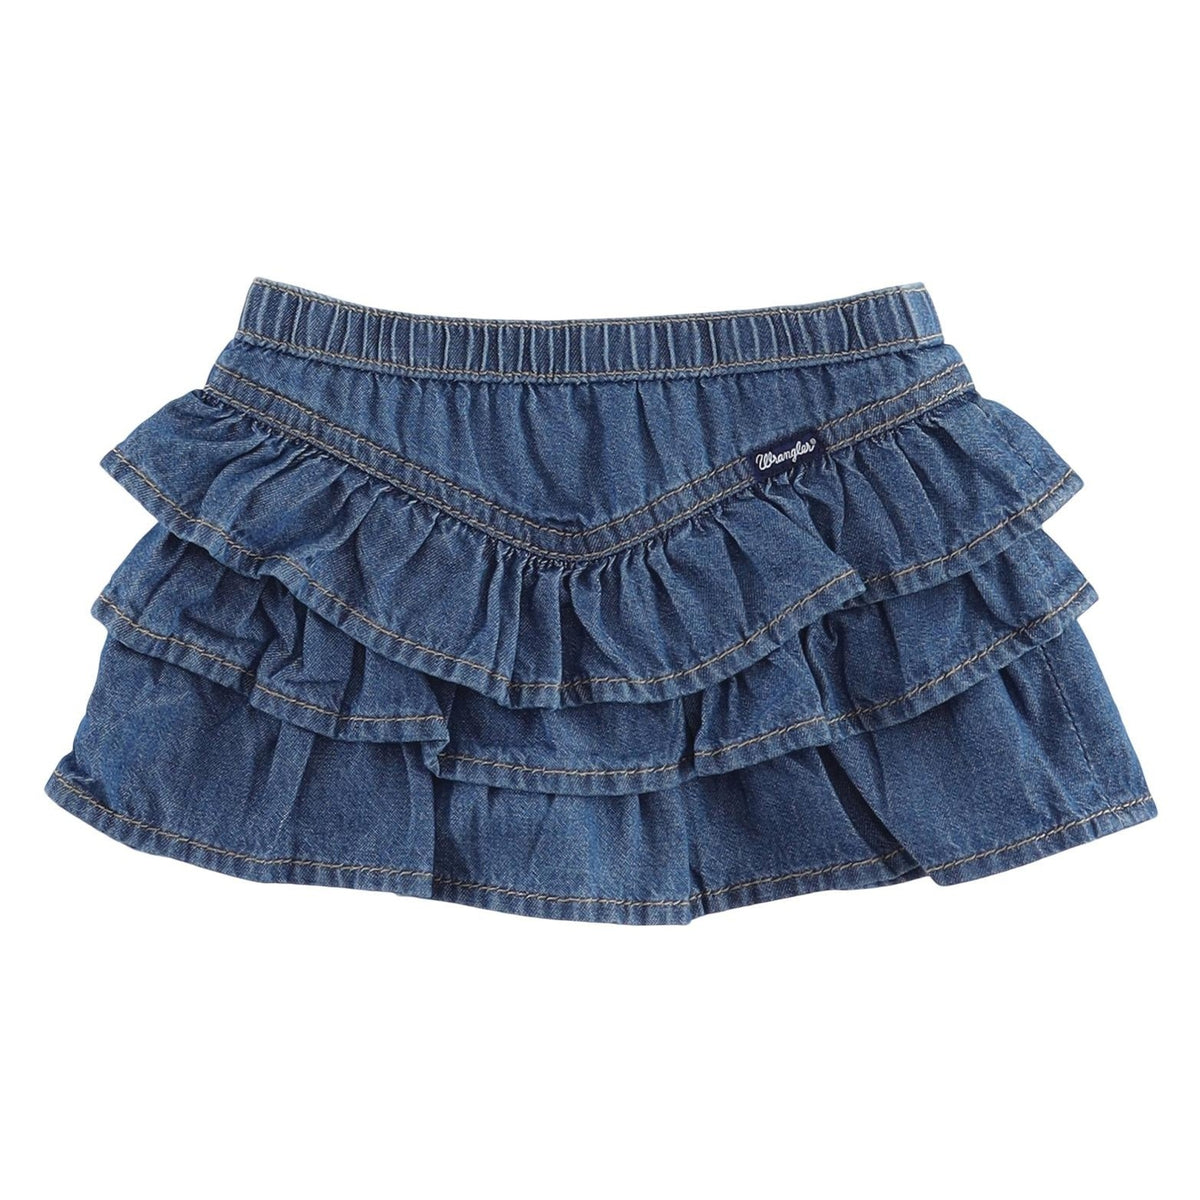 Wrangler Baby Girl/Infant/Toddler Denim Skirt